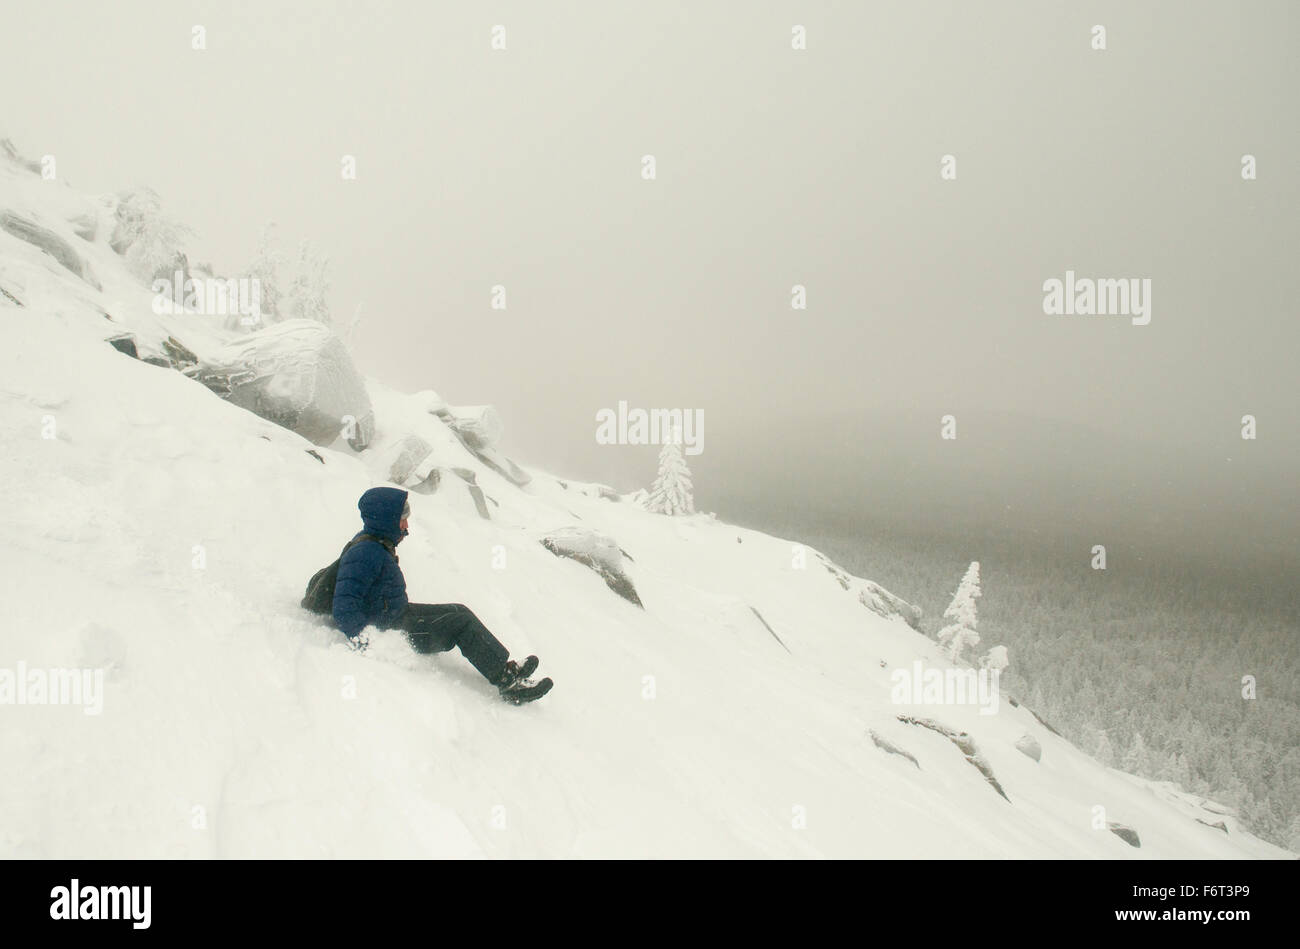 Caucasian man sledding on snowy mountain Stock Photo